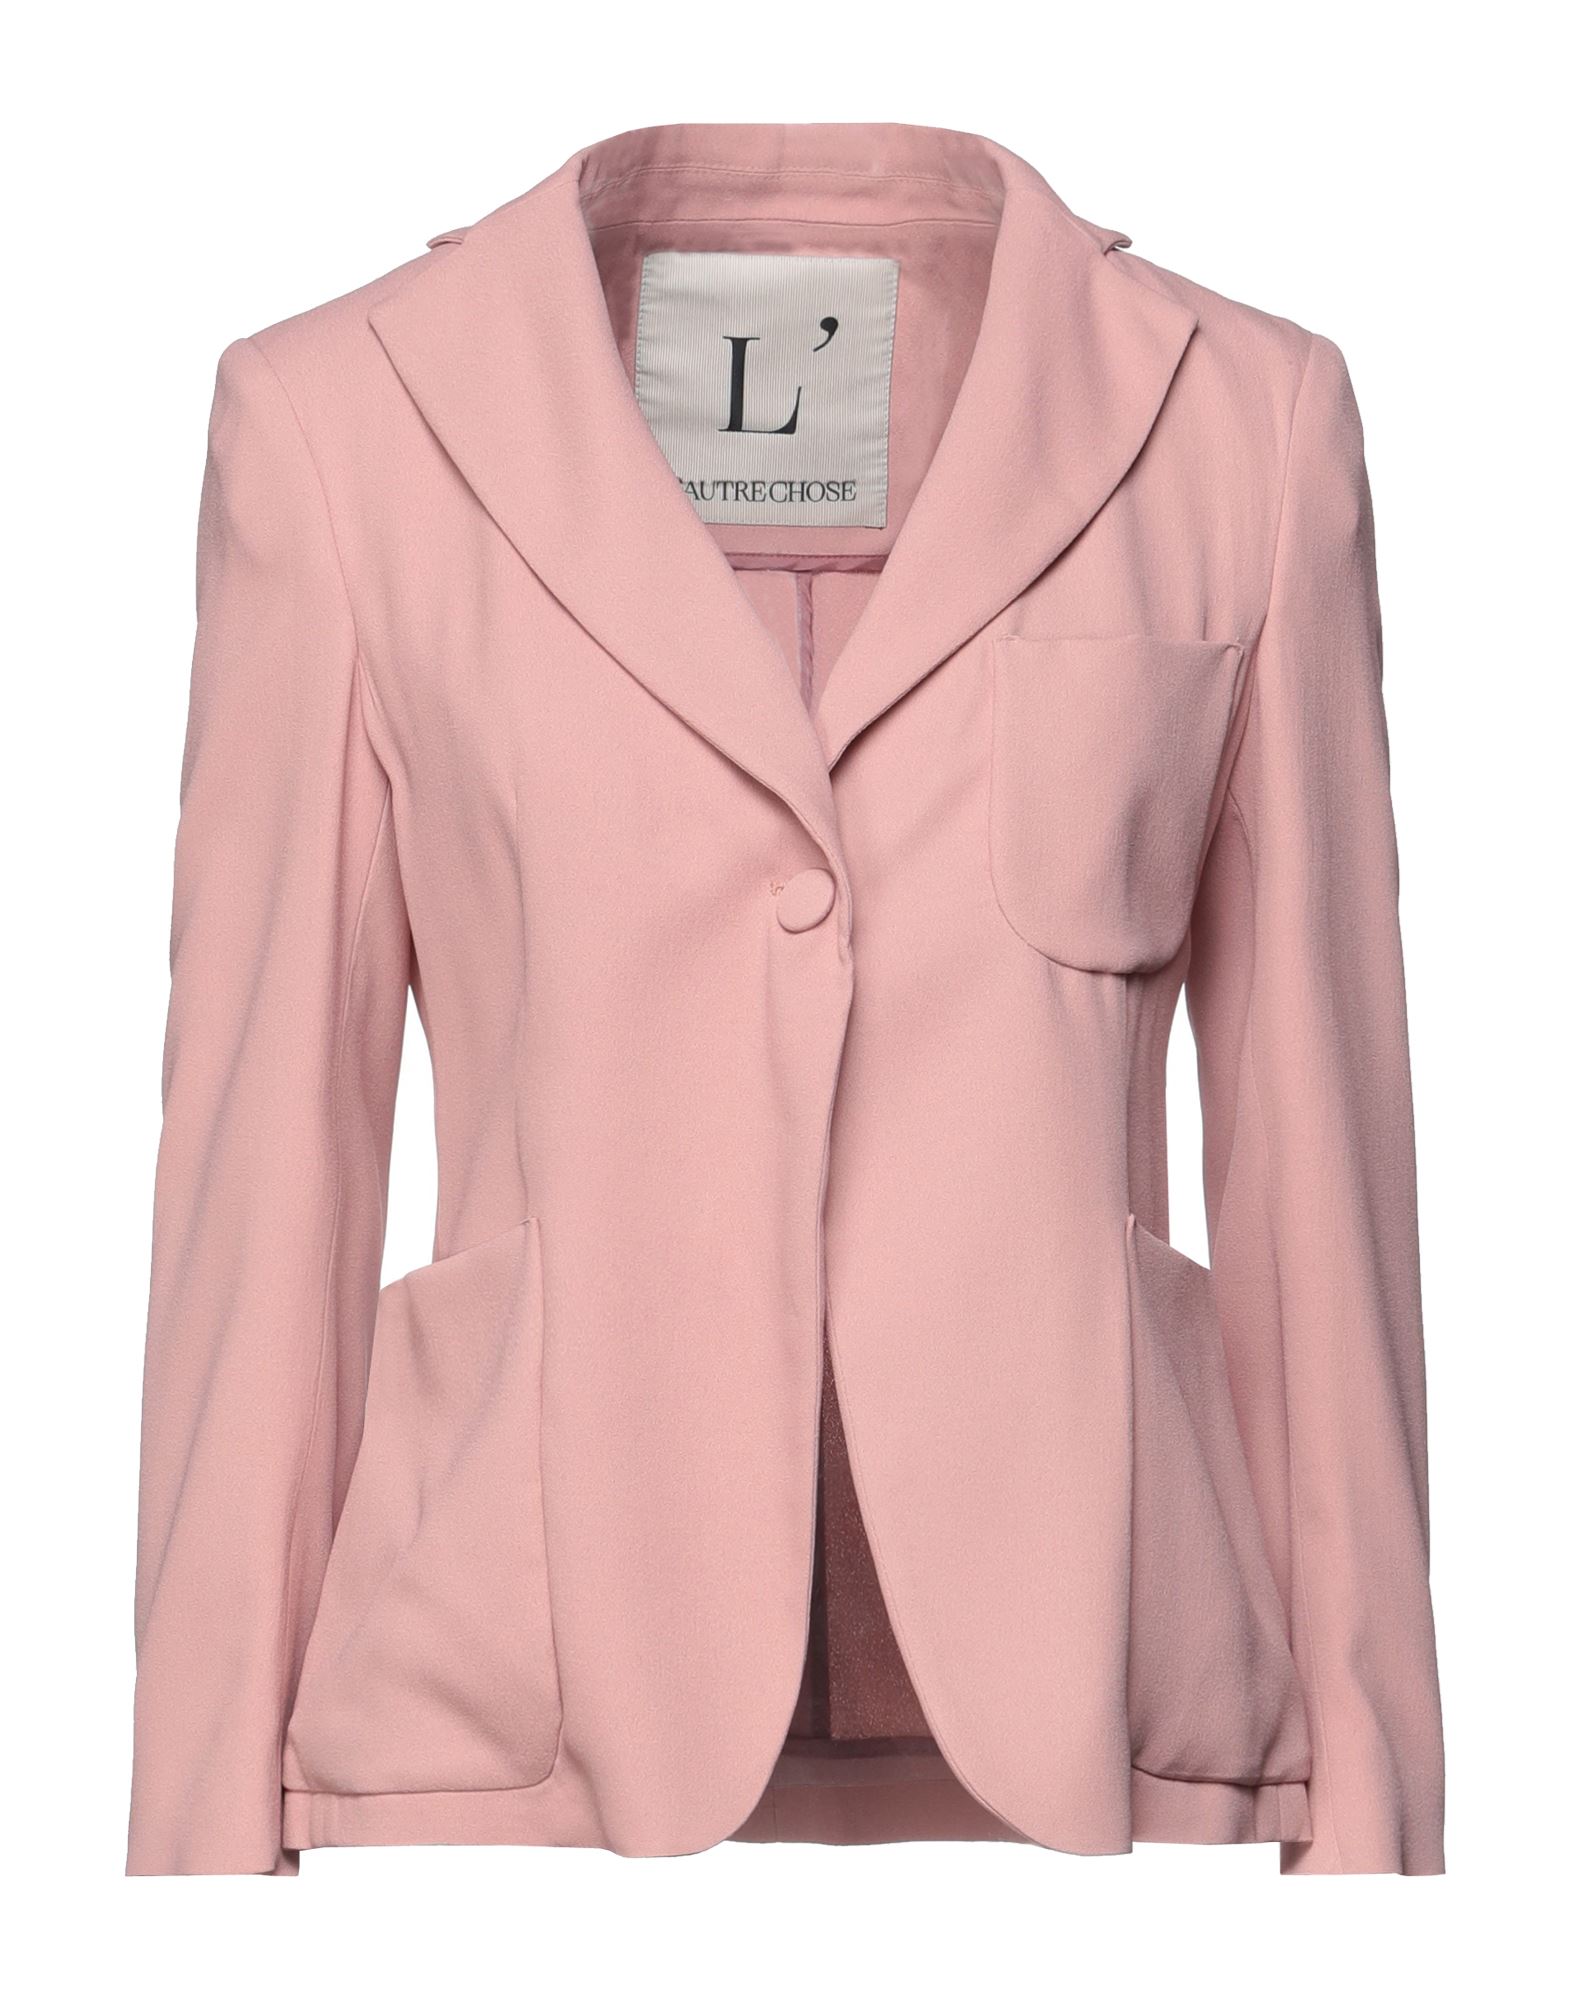 L'autre Chose L' Autre Chose Woman Suit Jacket Pink Size 10 Acetate, Viscose